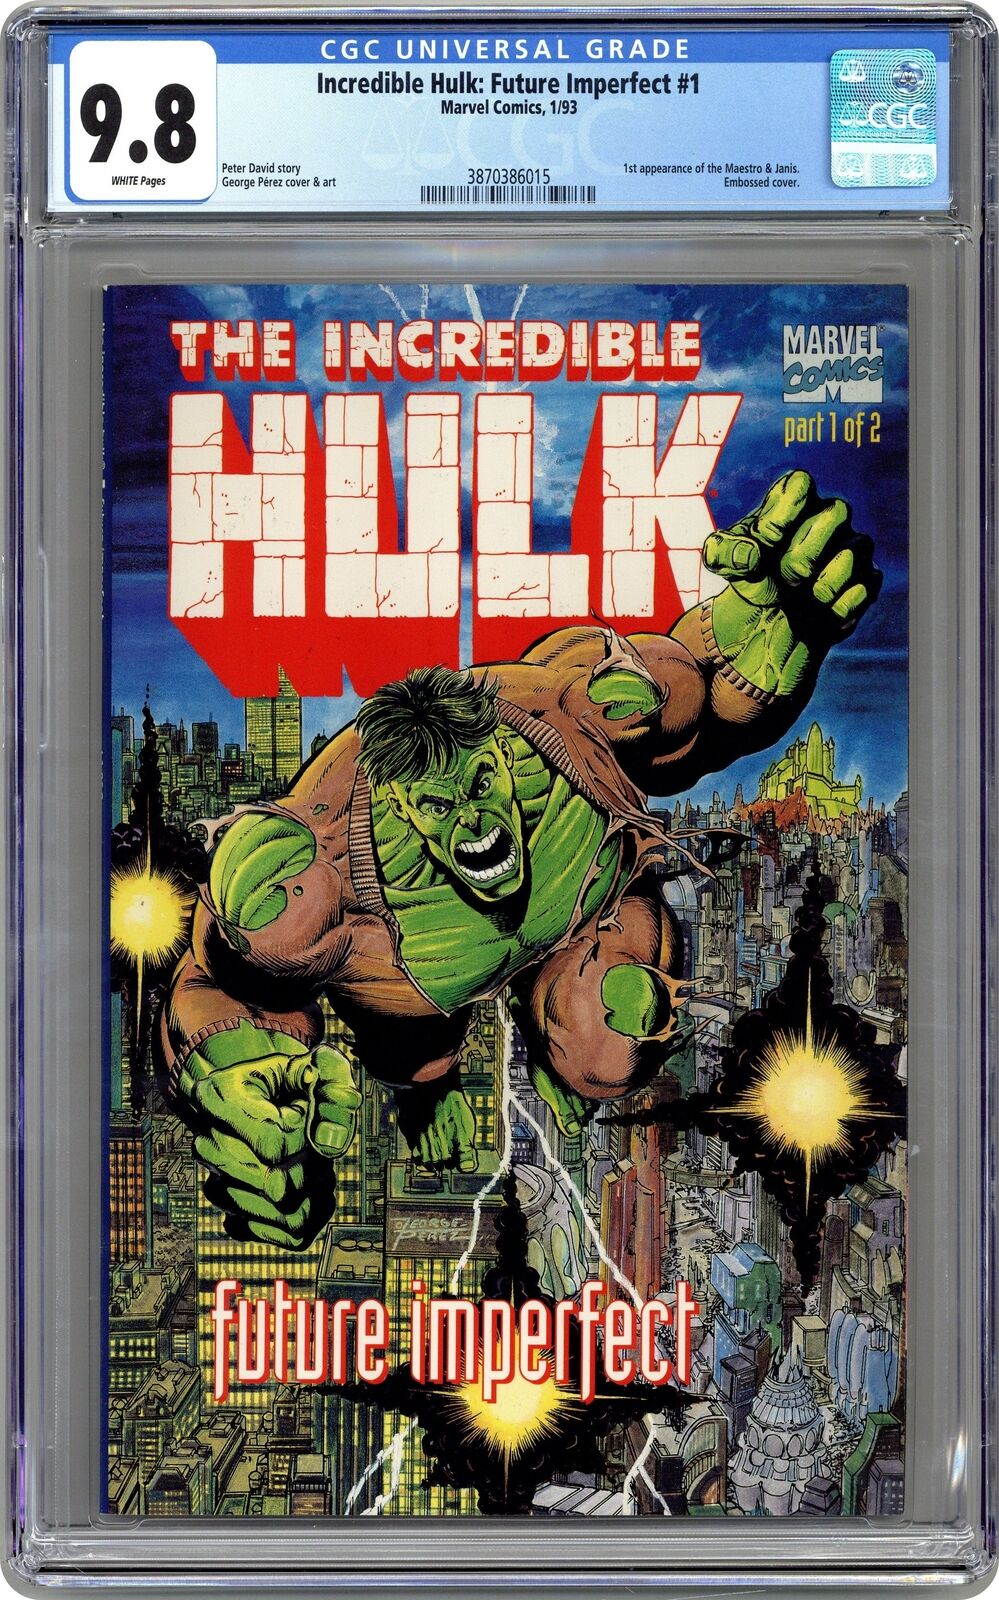 Hulk Future Imperfect #1 CGC 9.8 1992 3870386015 1st app. Maestro